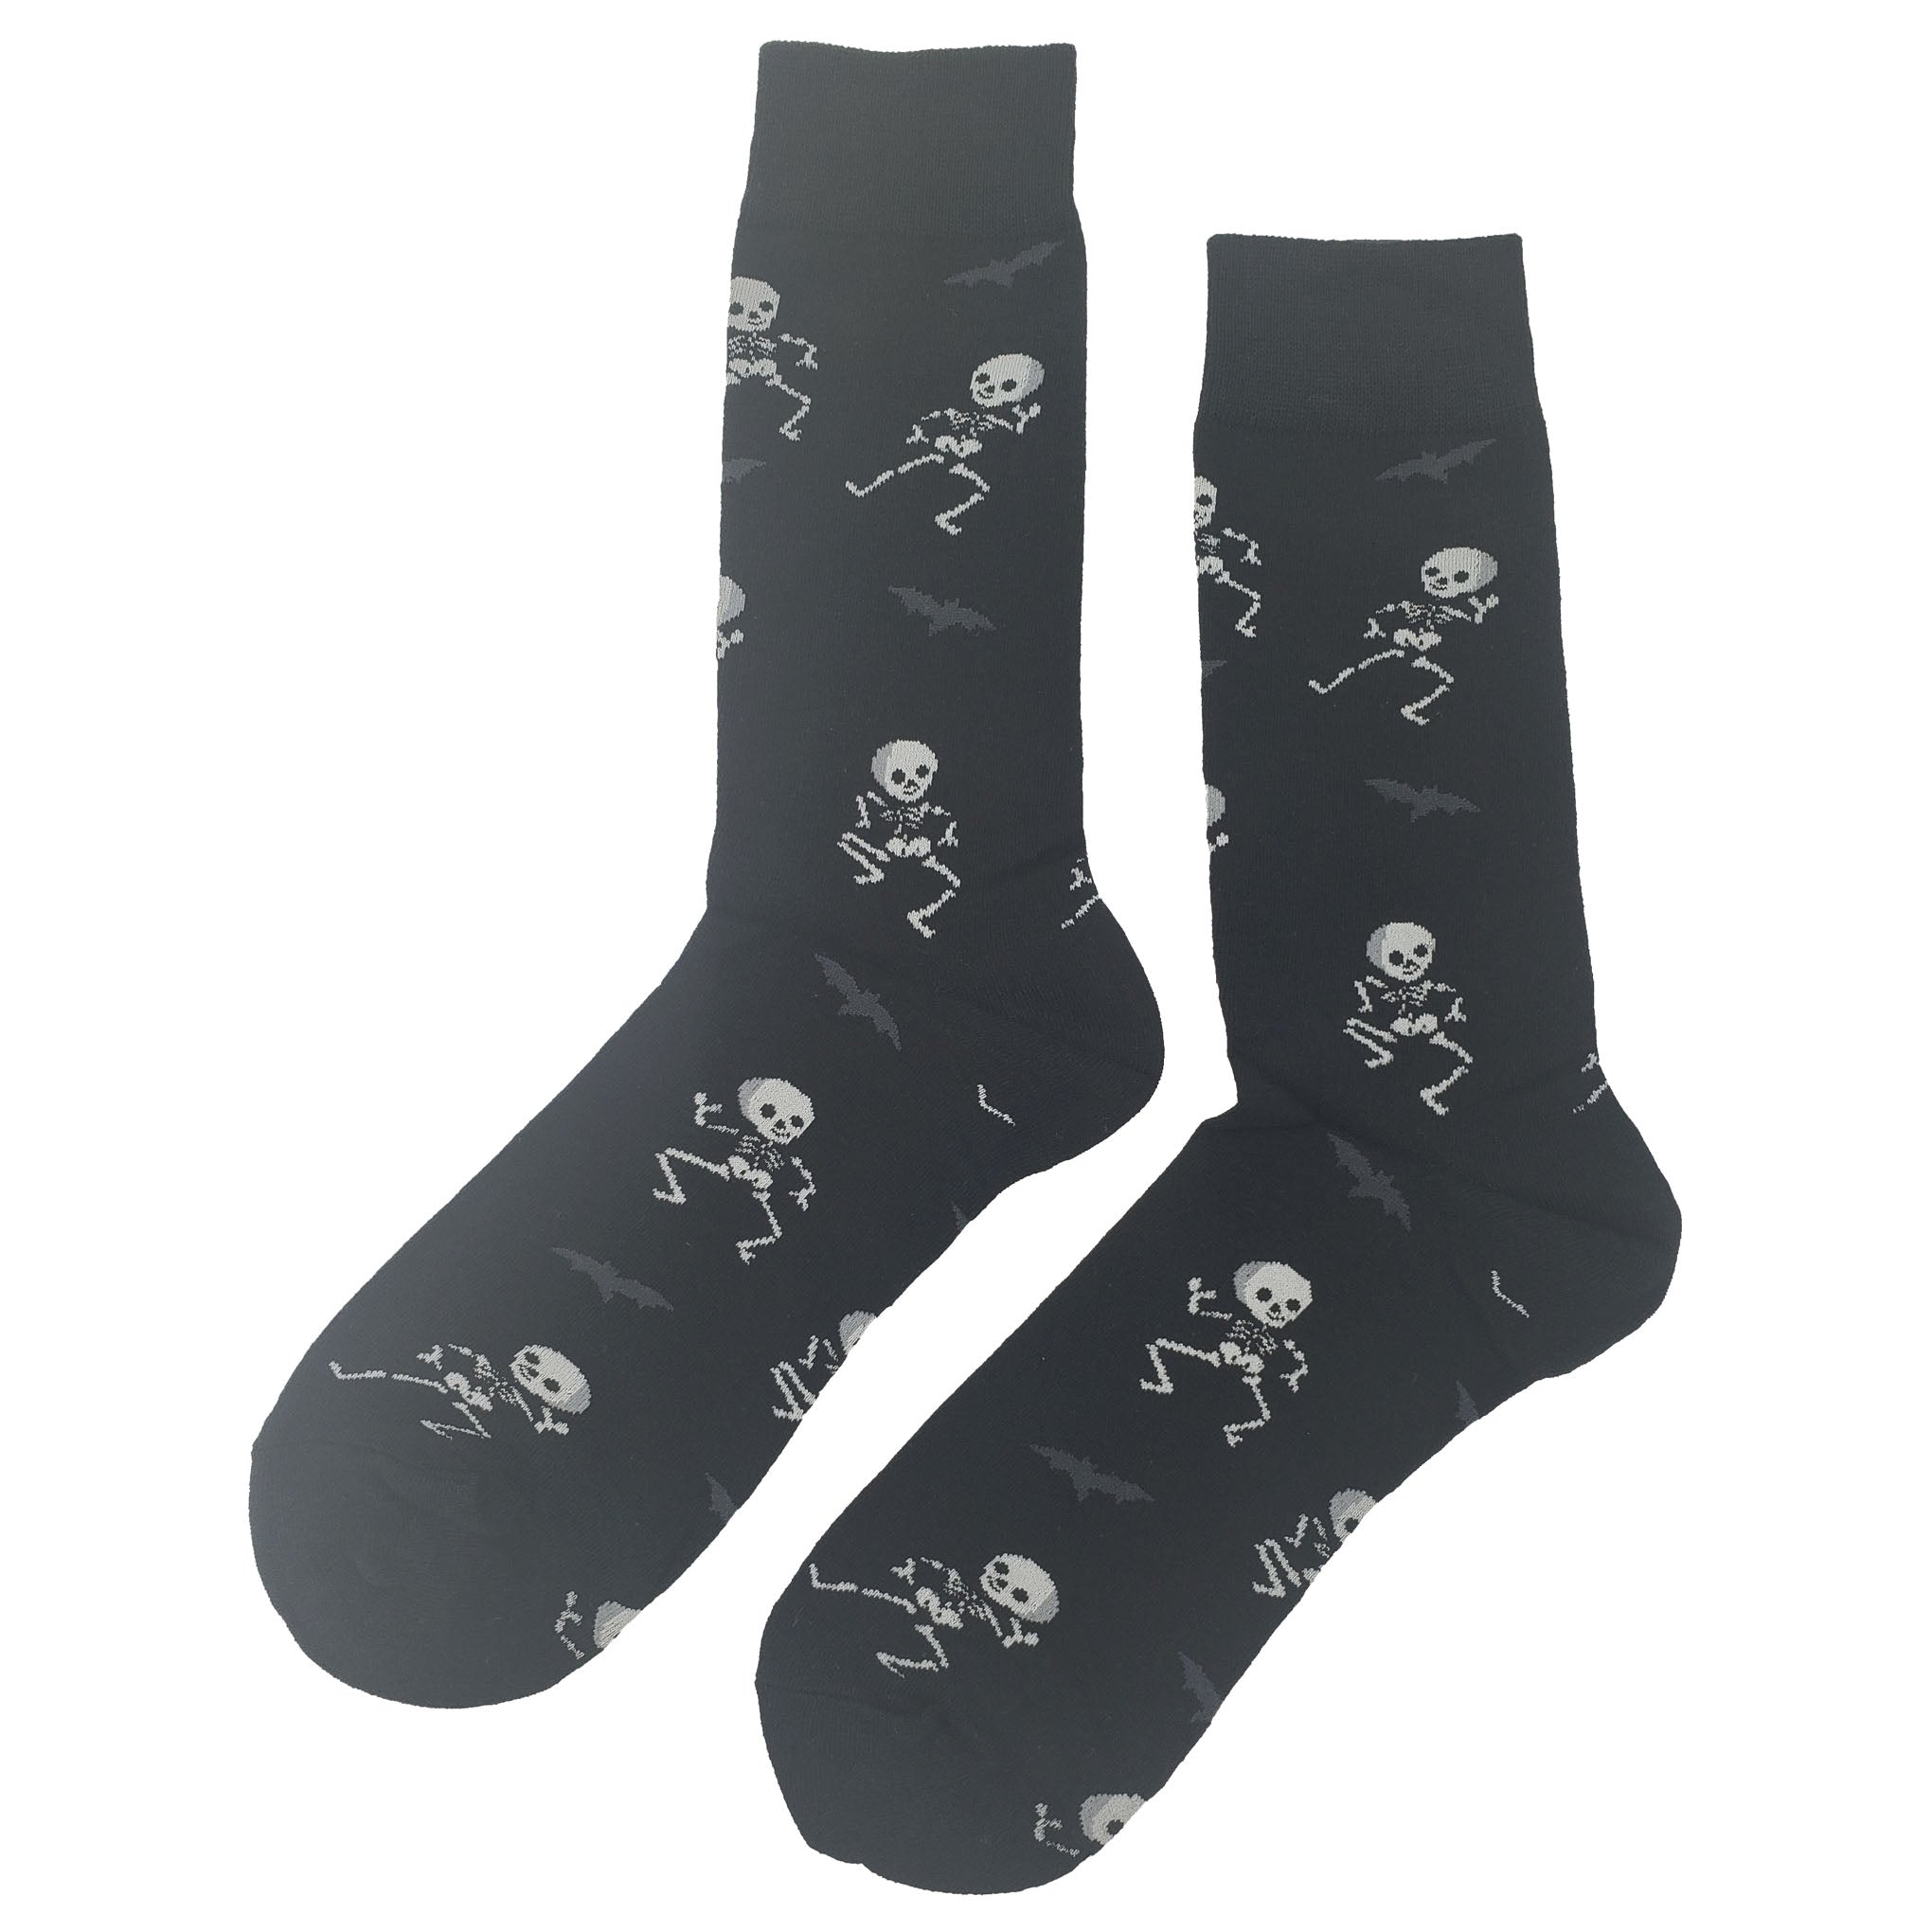 Spooky Skeleton Socks - Fun and Crazy Socks at Sockfly.com